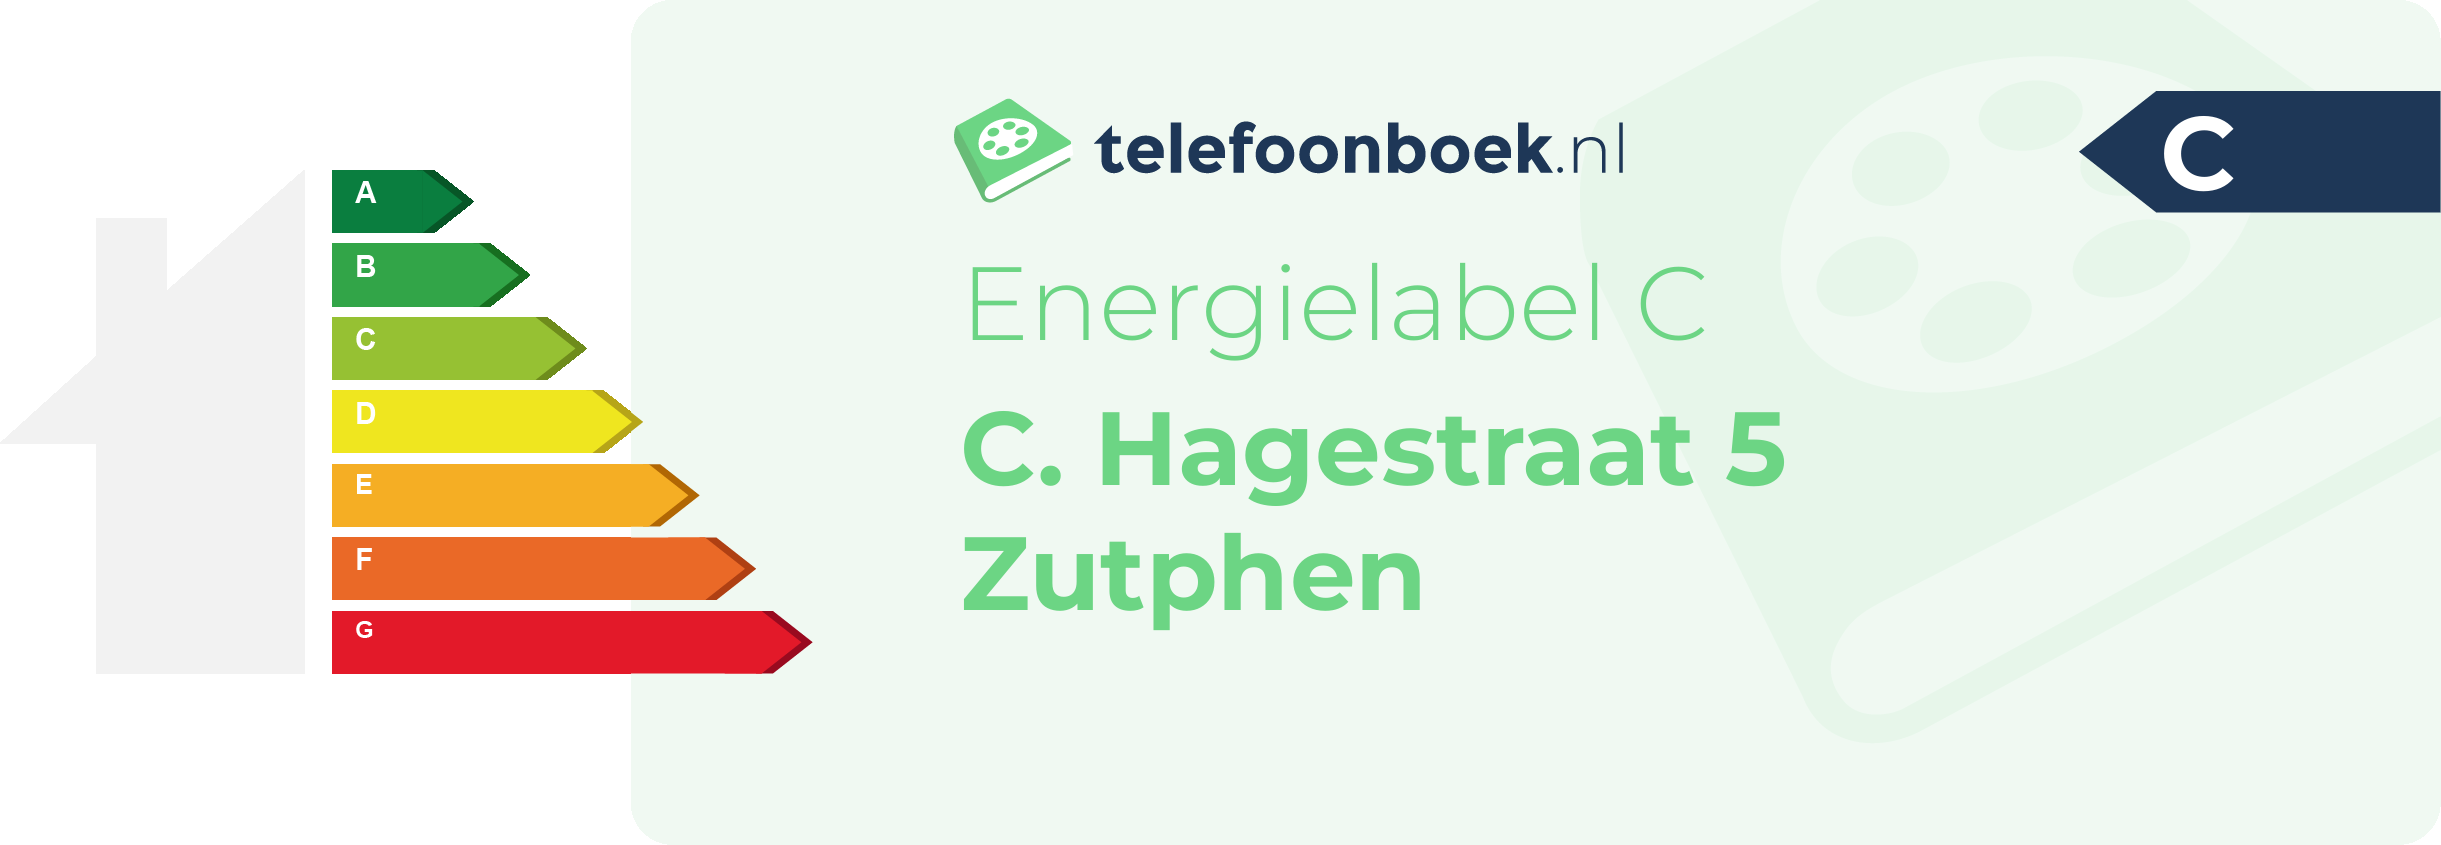 Energielabel C. Hagestraat 5 Zutphen